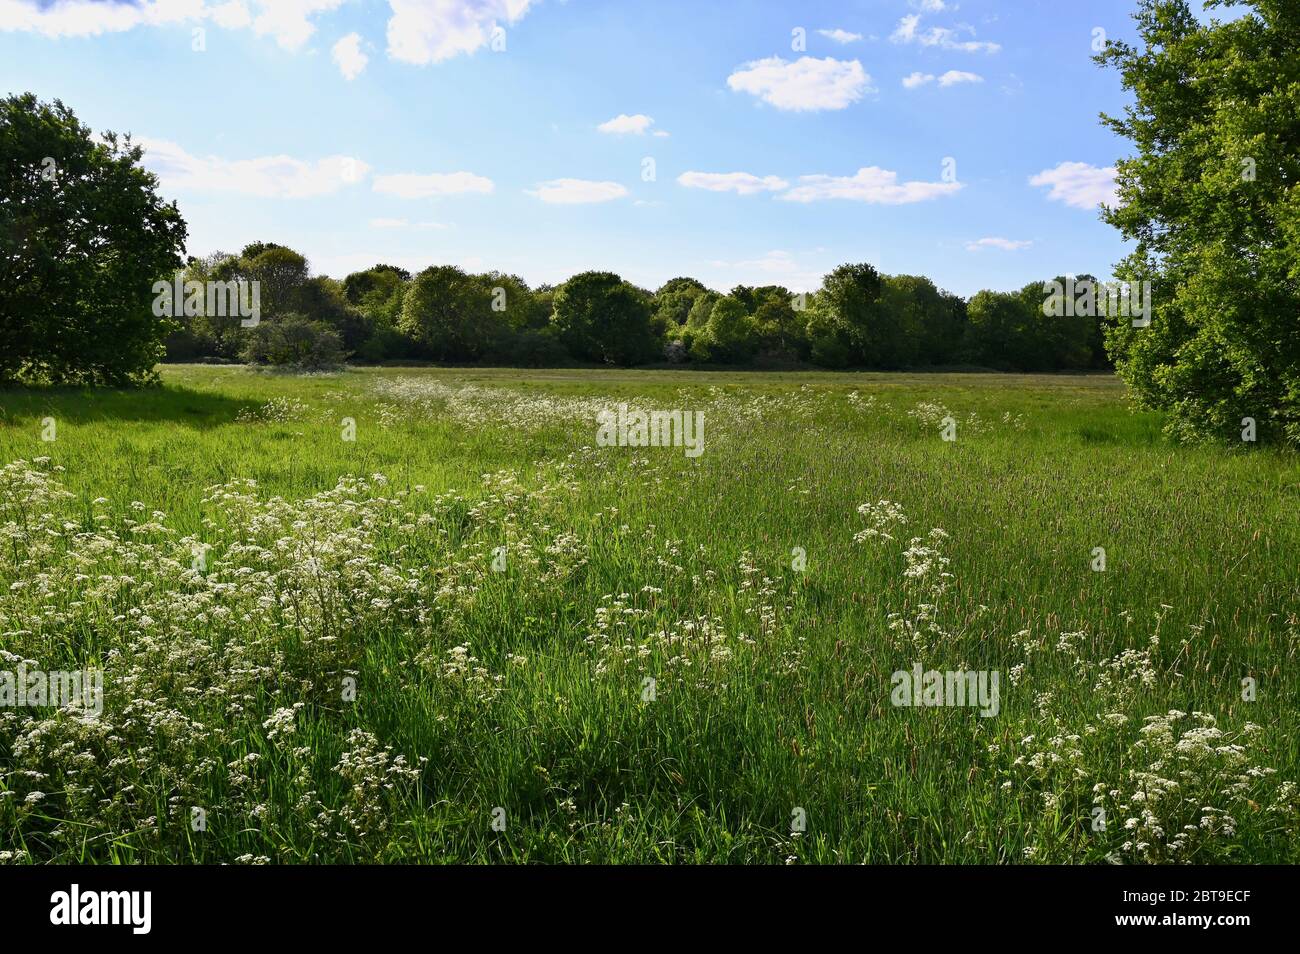 Persil de vache. Foots Cray Meadows, Sidcup, Kent. ROYAUME-UNI Banque D'Images